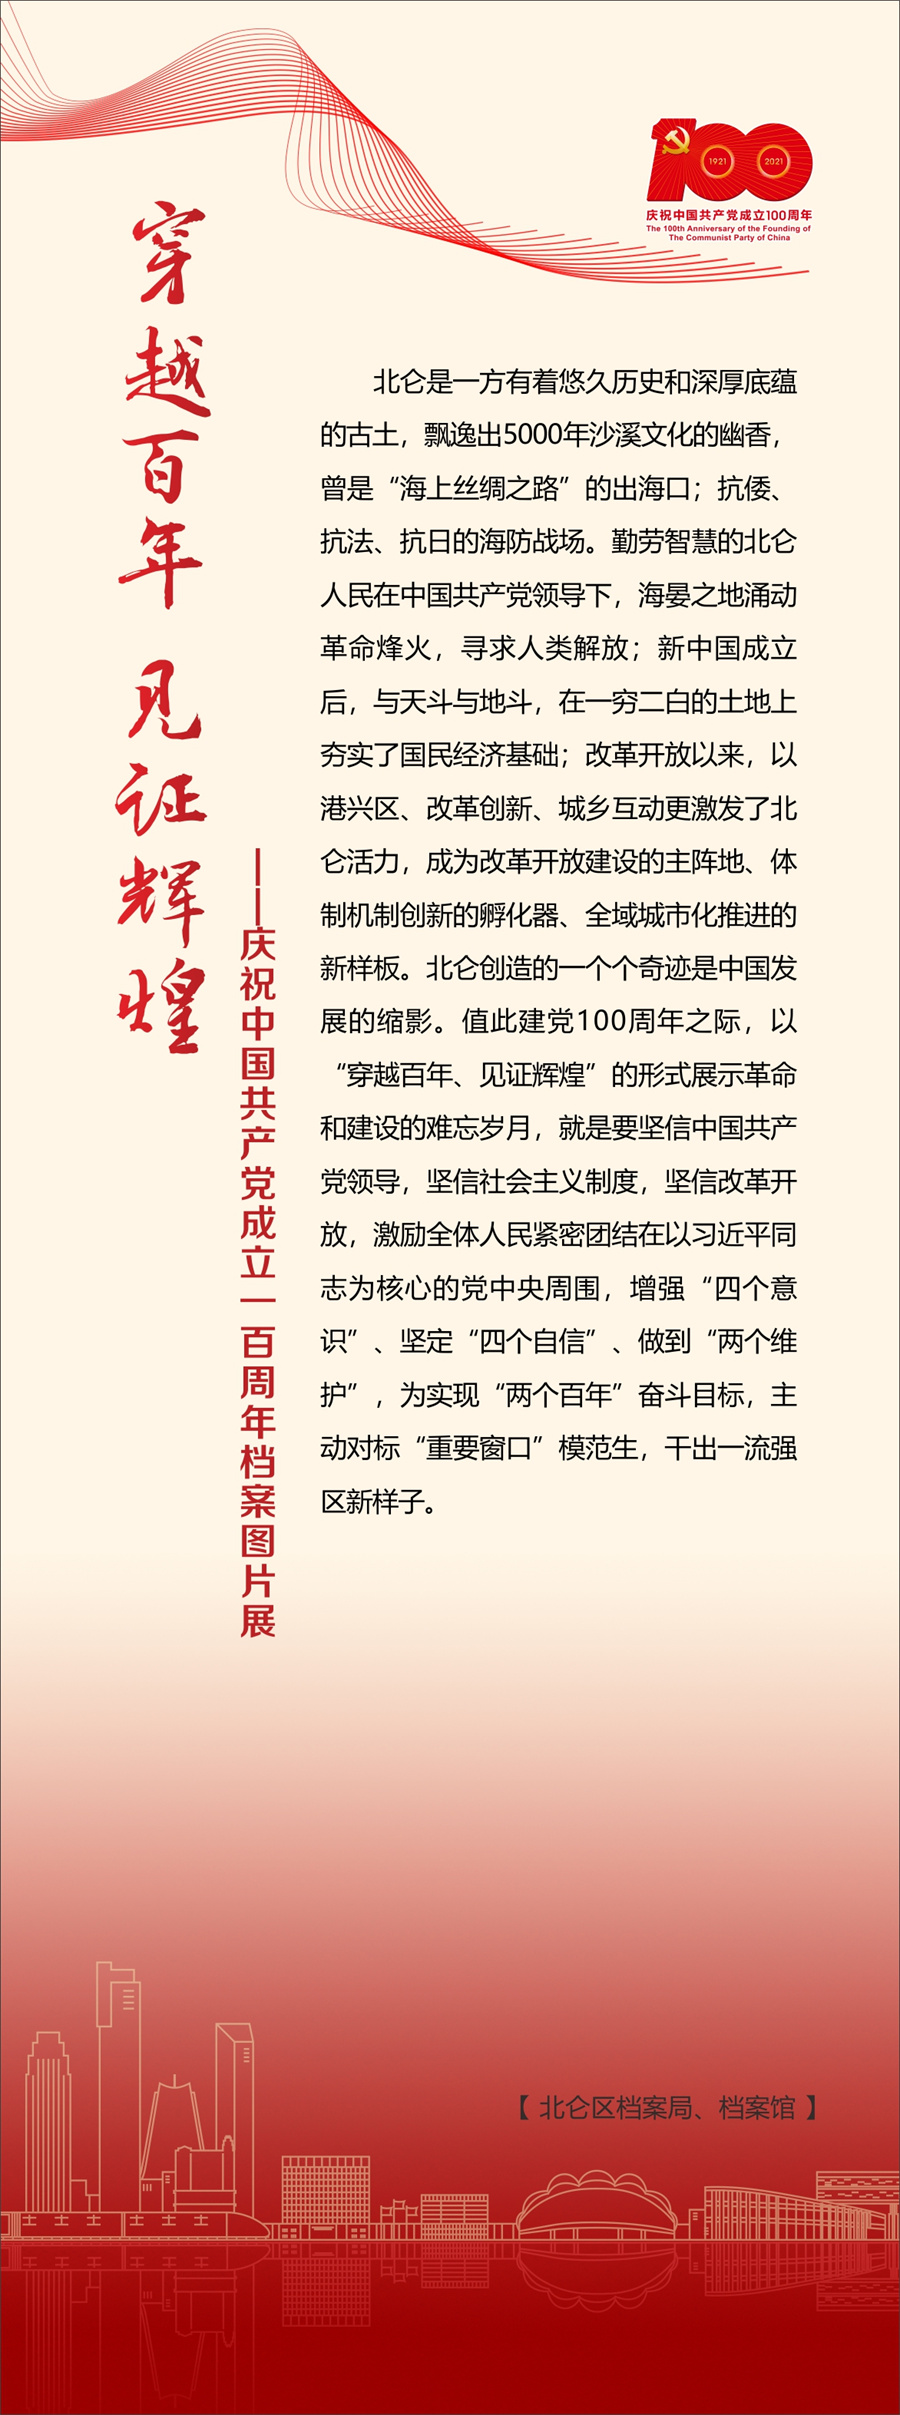 穿越百年 见证辉煌——庆祝中国共产党成立一百周年档案图片展